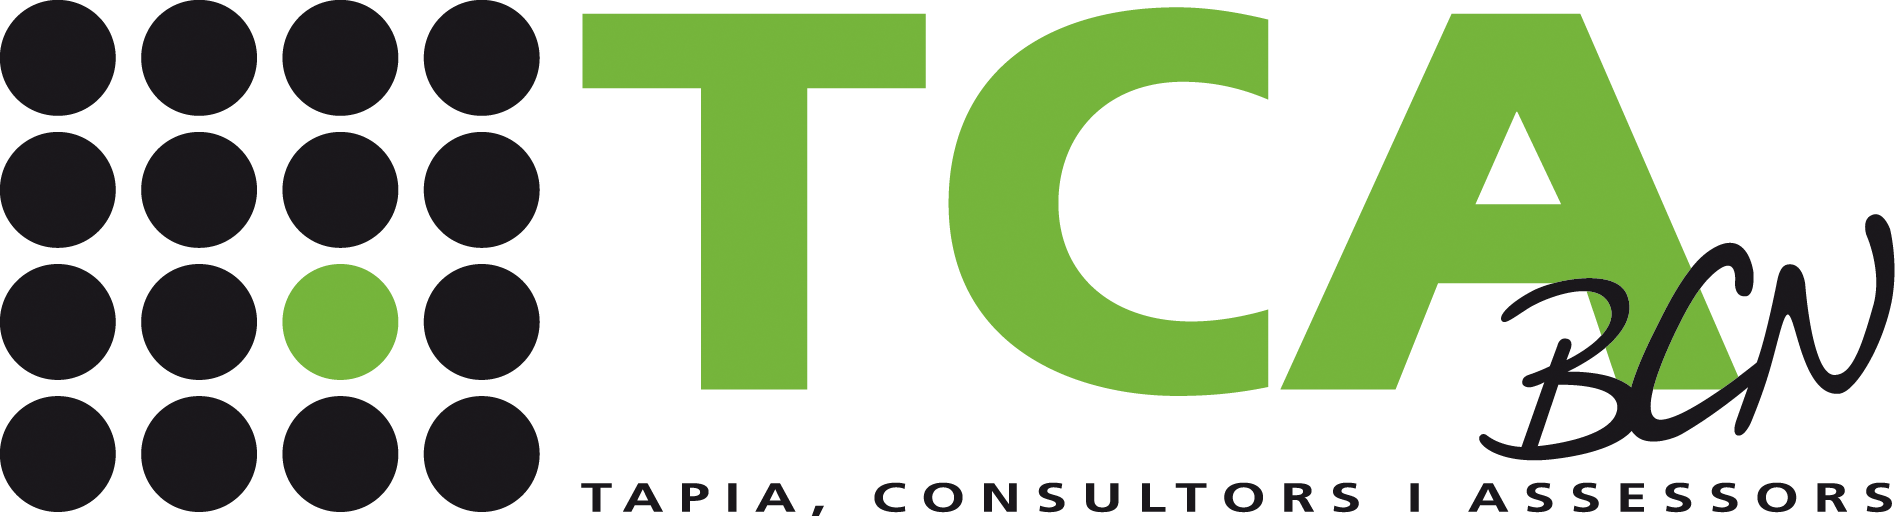 Tapia Consultors, S.L., laboral, fiscal i comptable a Barcelona